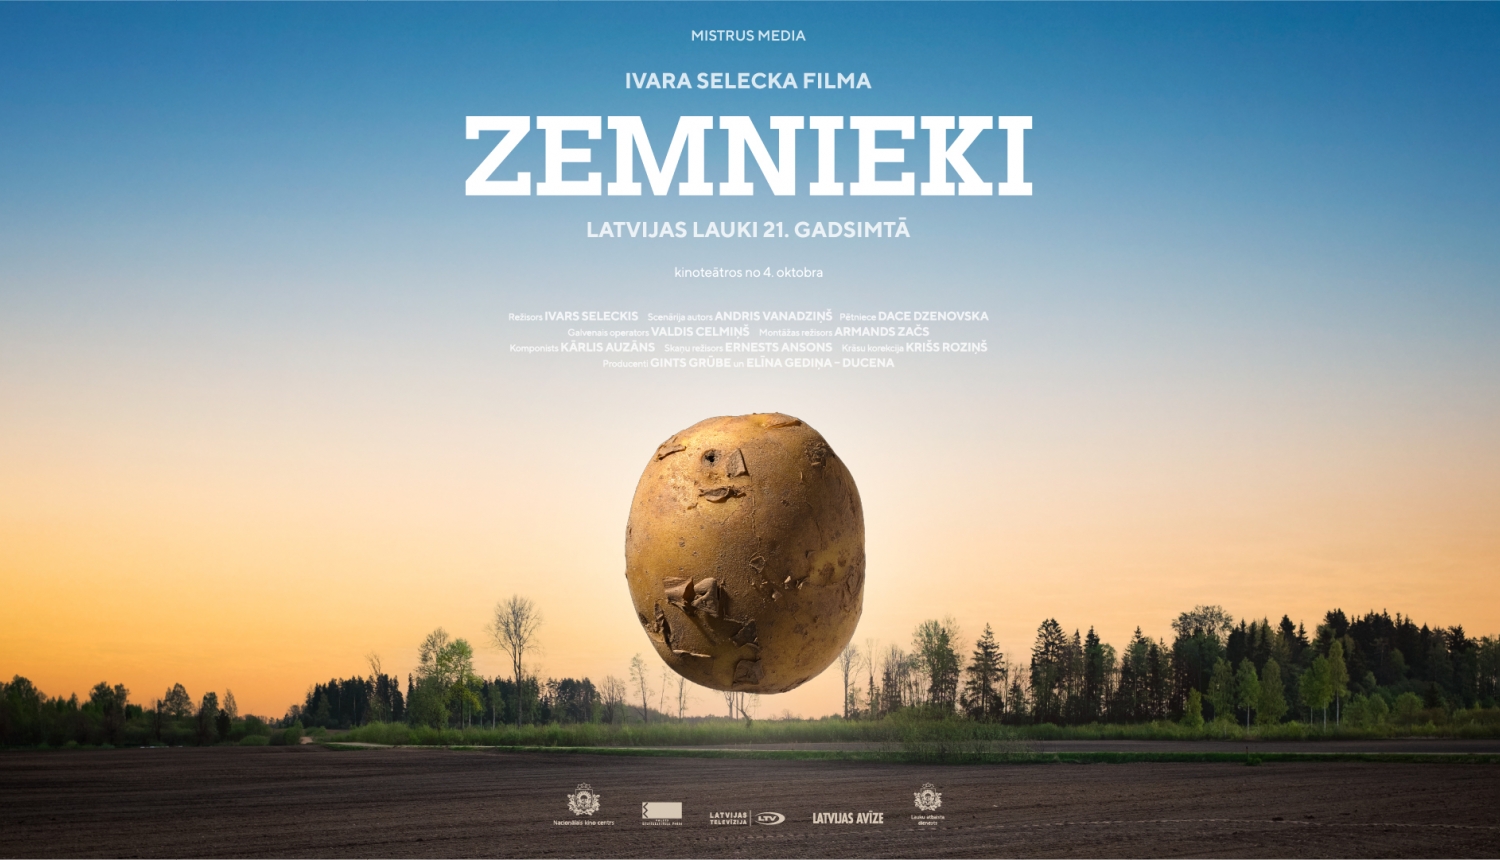 27. janvārī Kārķos izrādīs I. Selecka filmu “Zemnieki”